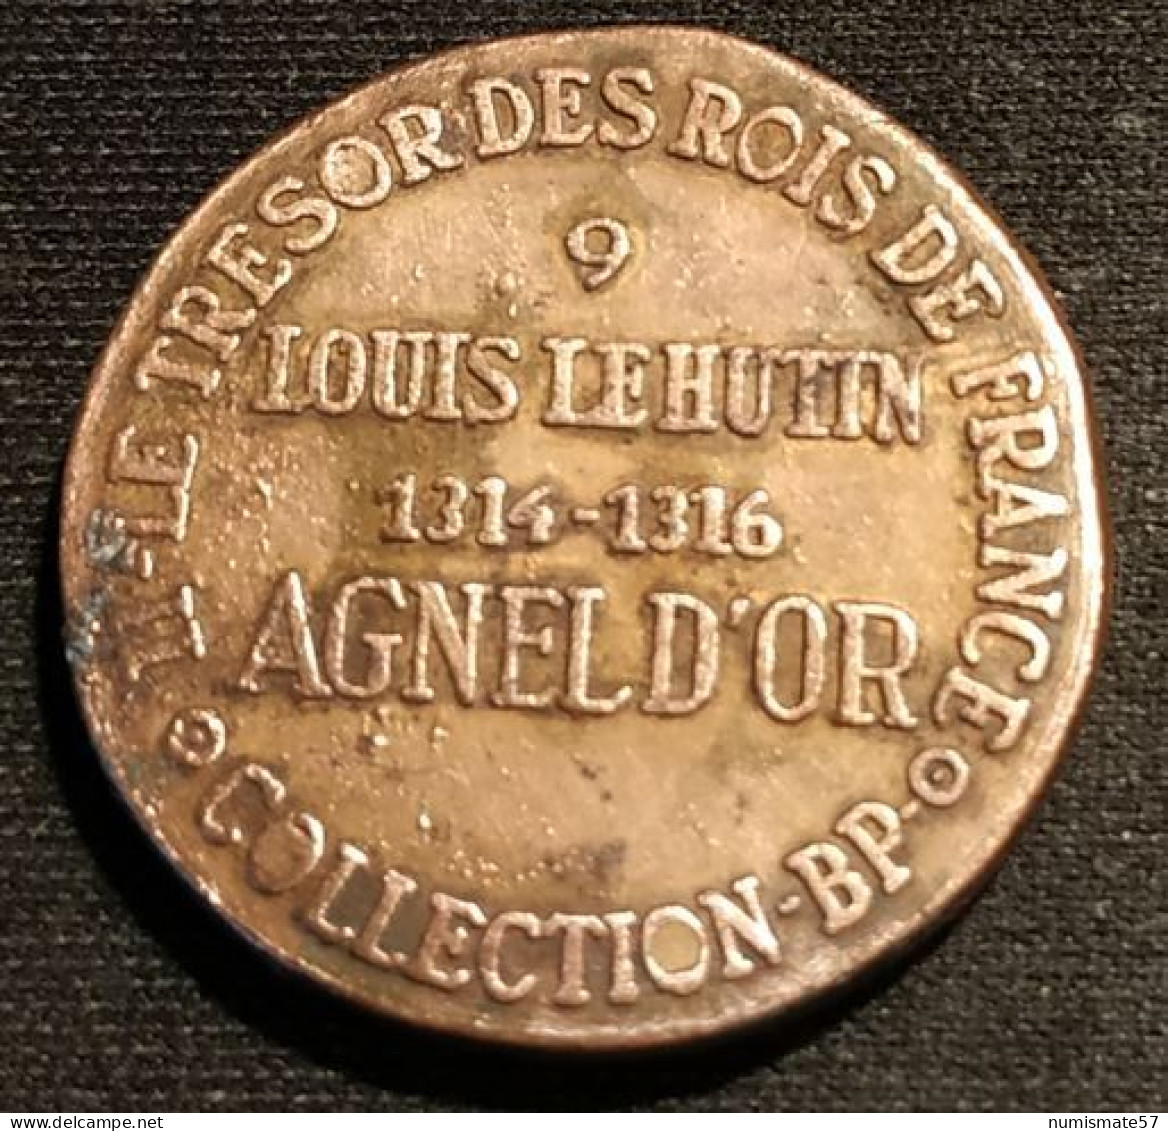 JETON - COLLECTION BP - LOUIS LE HUTIN - AGNEL D'OR - 1314-1316 - Professionnels / De Société